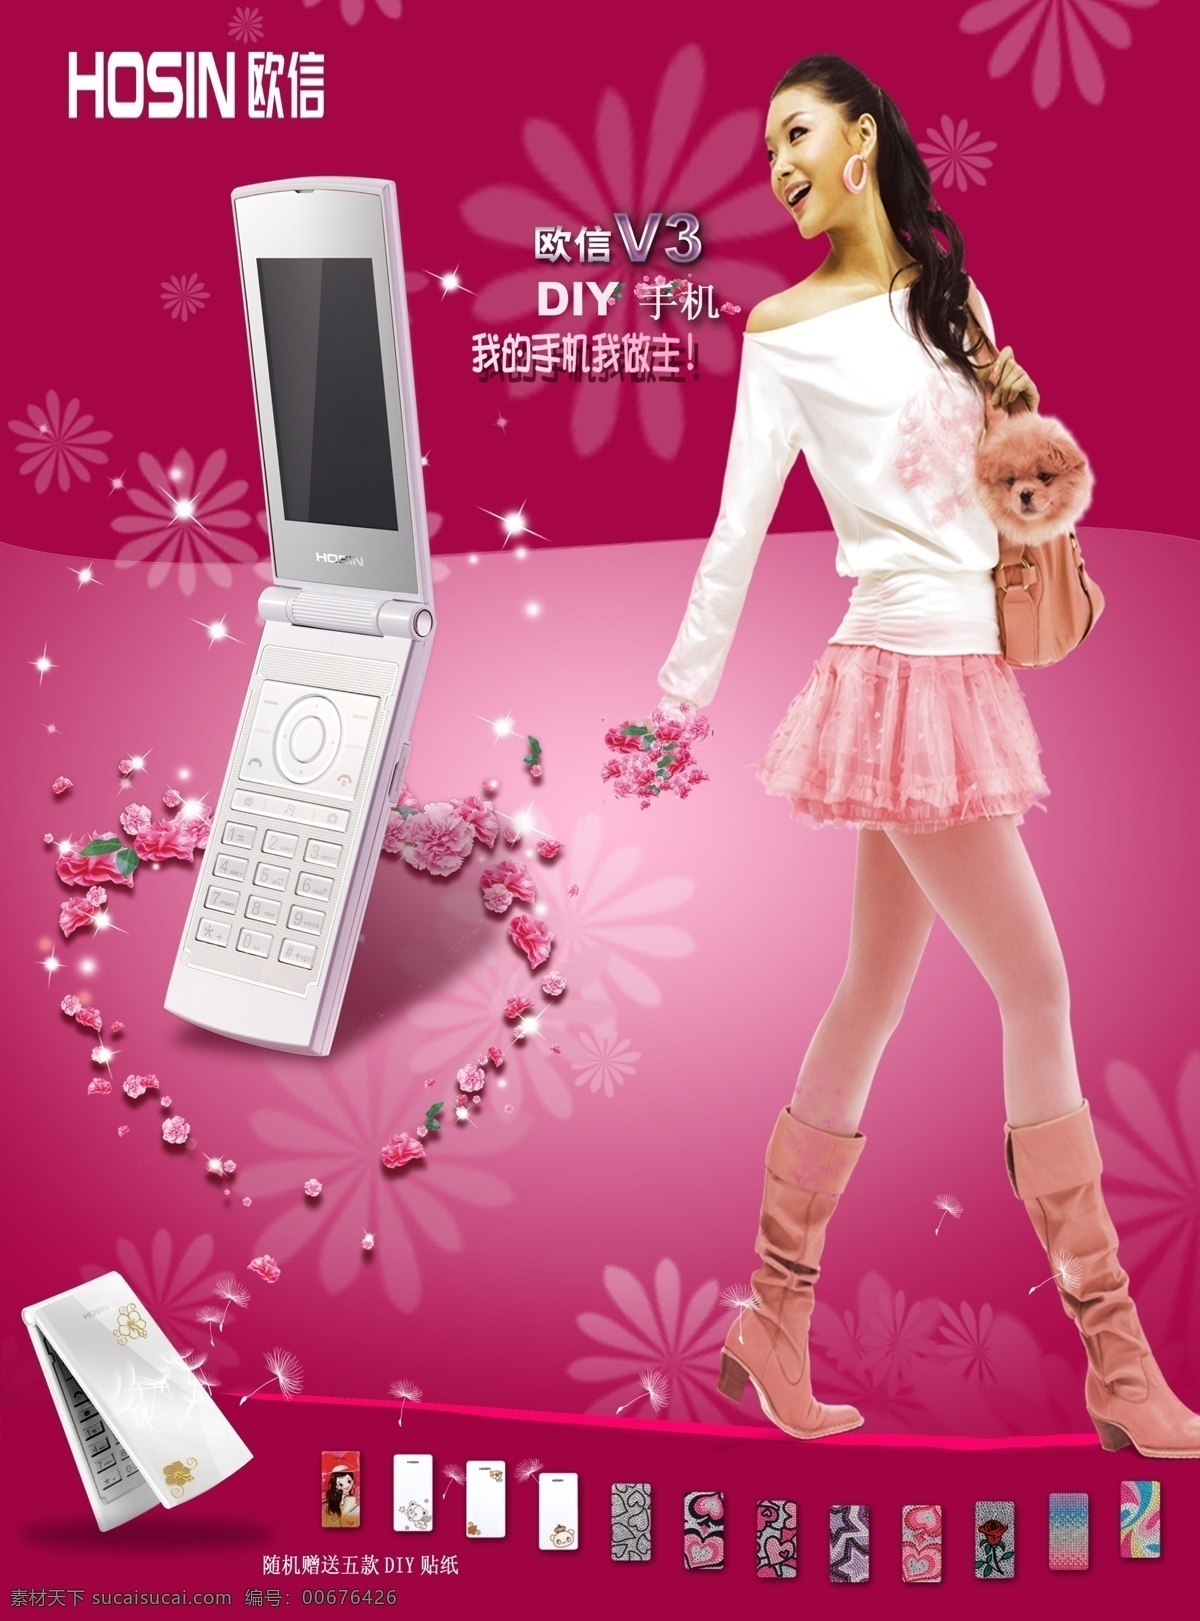 欧 信 女性 手机 海报 图 女性手机 翻盖手机 海报图 玫瑰 美女 粉红色系 手机宣传海报